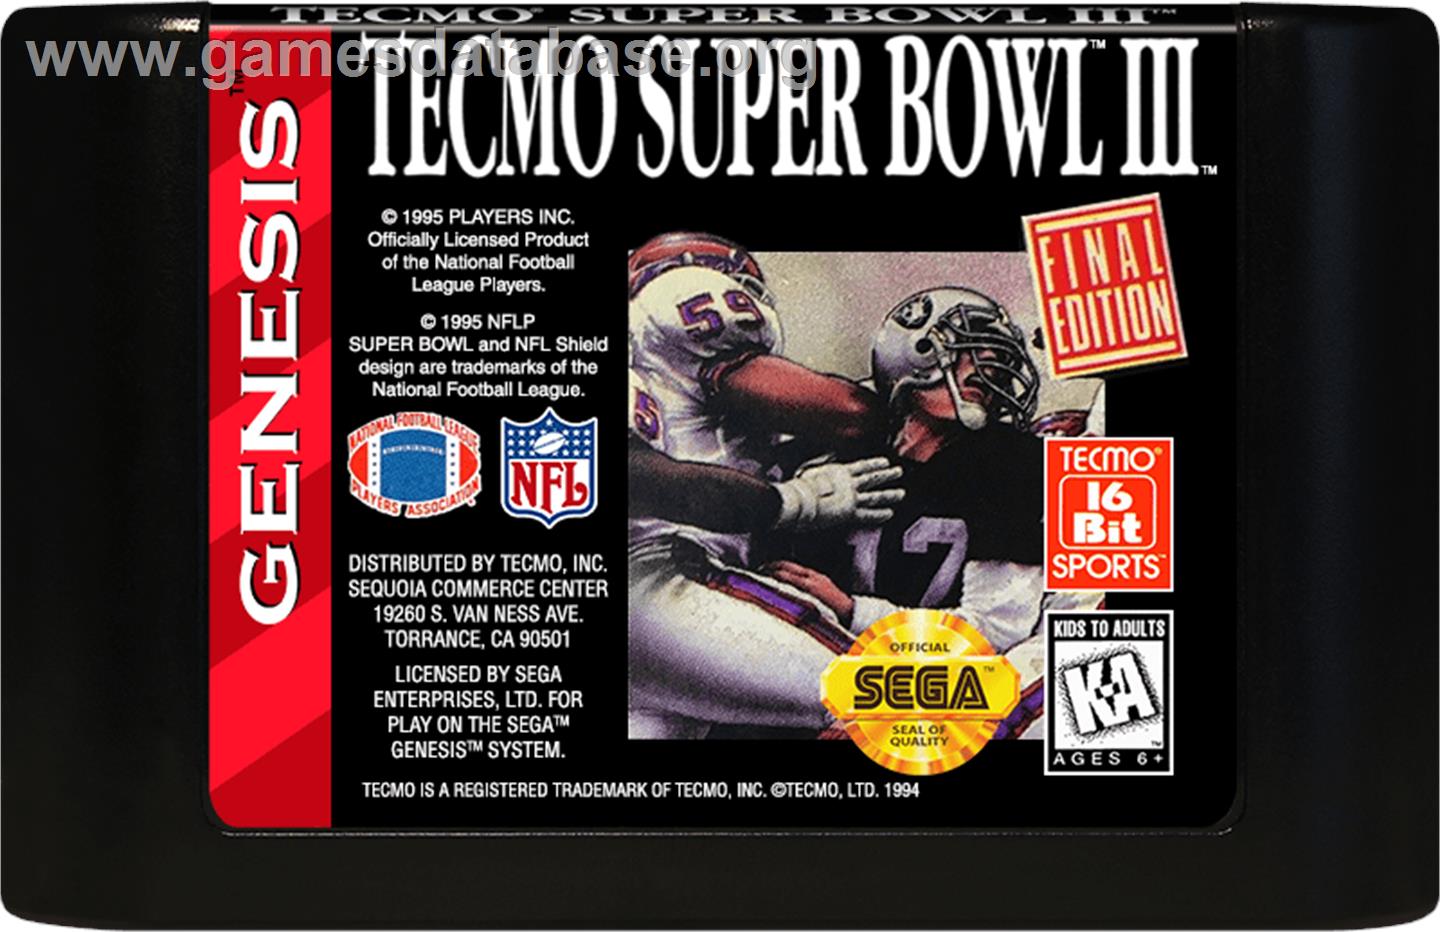 Tecmo Super Bowl III: Final Edition - Sega Genesis - Artwork - Cartridge